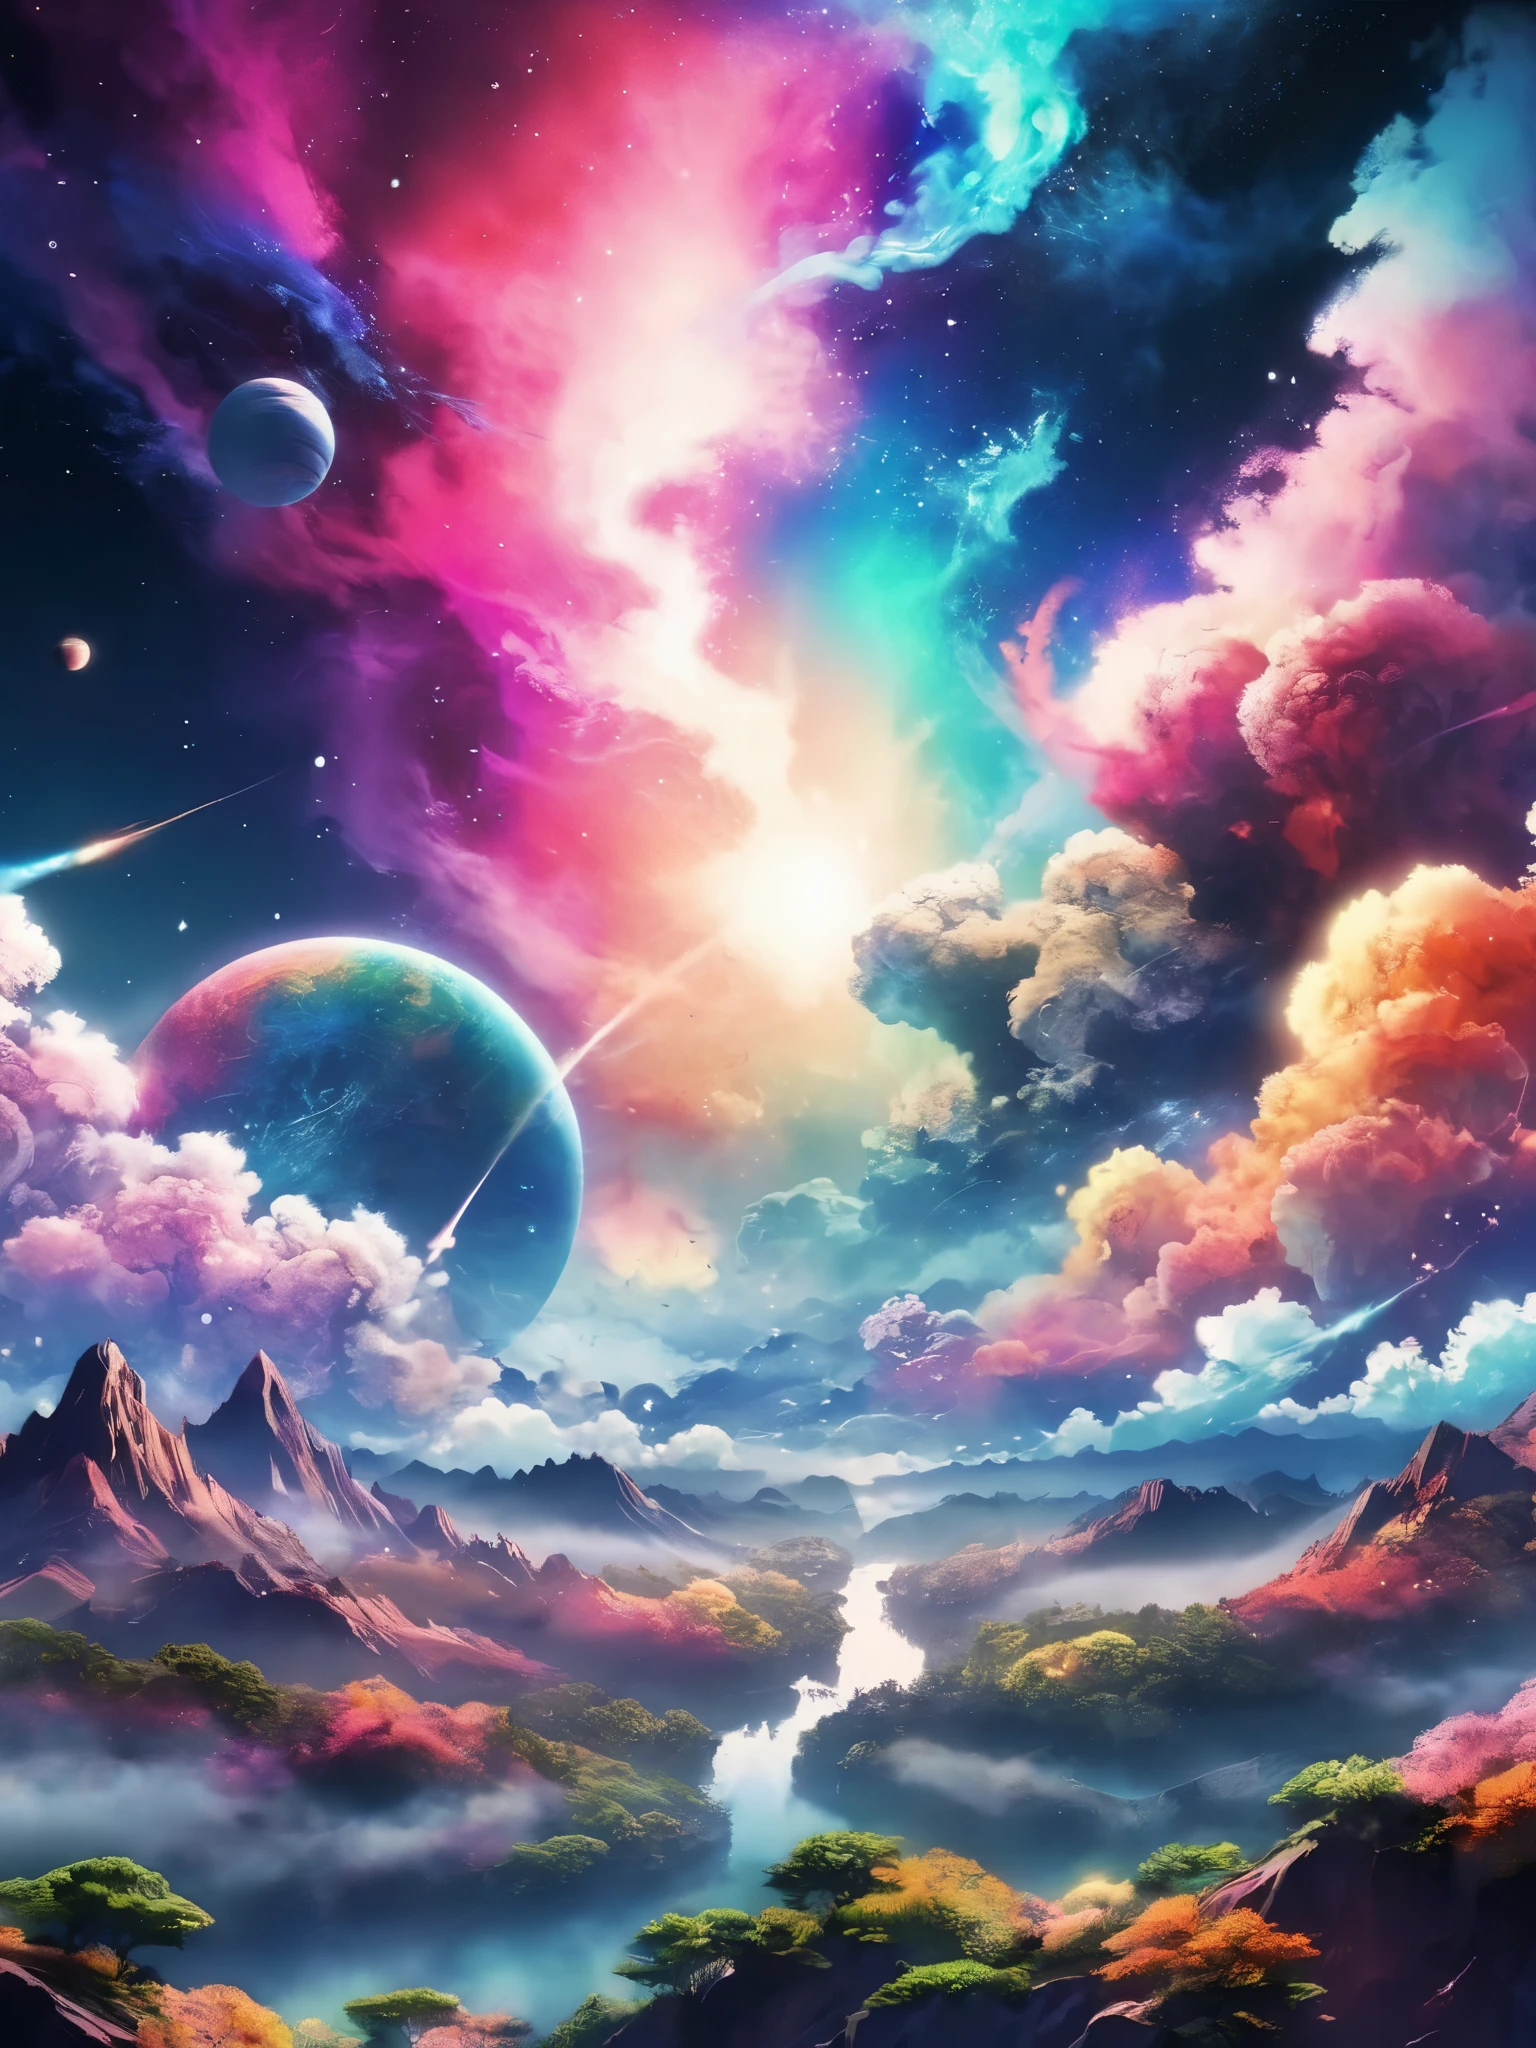 꿈꾸는 듯한 애니메이션 풍경, 여러 가지 빛깔의 우주 연기 